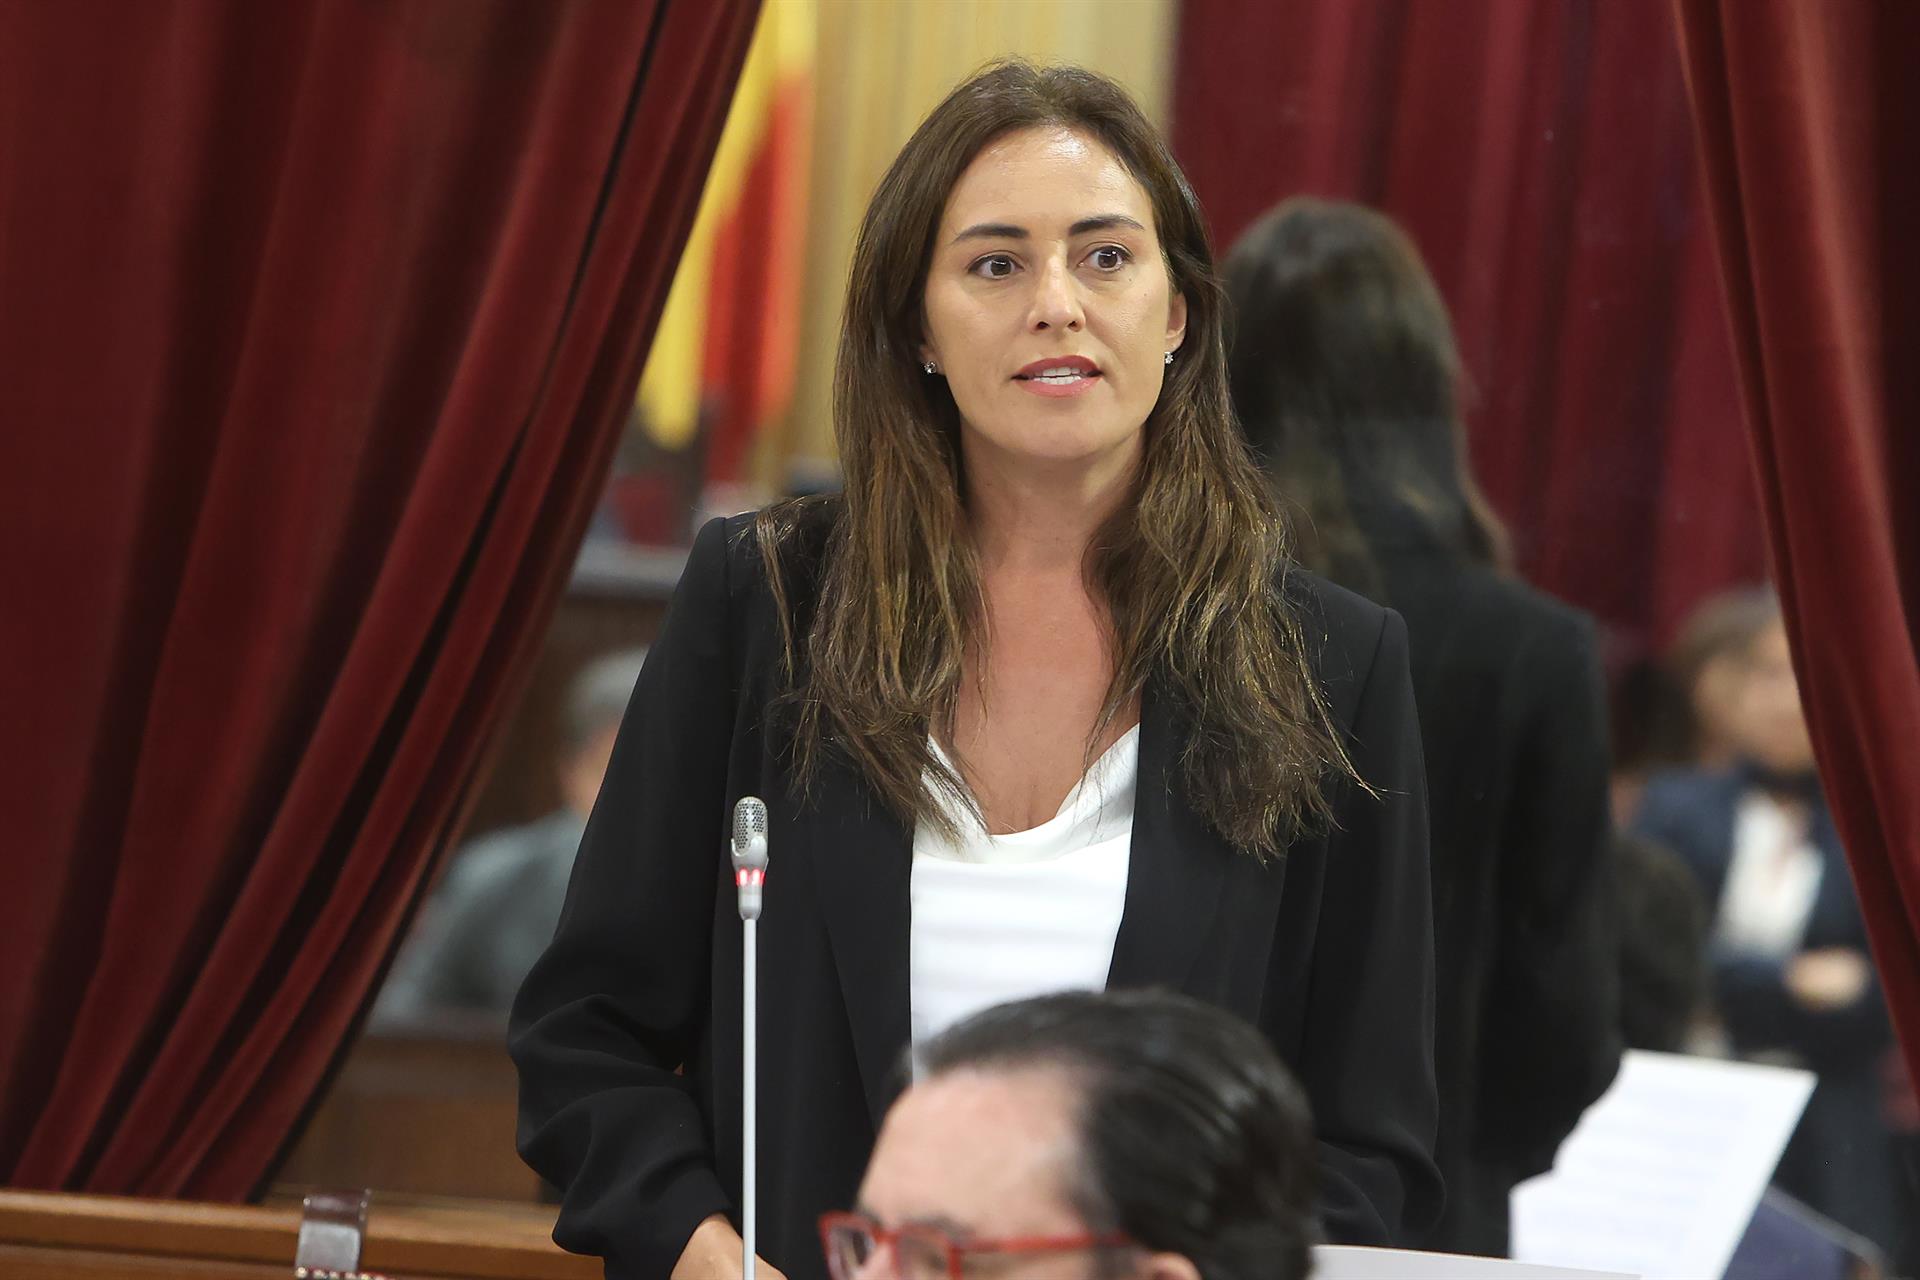 La portavoz de Vox Baleares en el Parlament, Idoia Ribas durante una sesión de control en el Parlament balear. - Isaac Buj - Europa Press